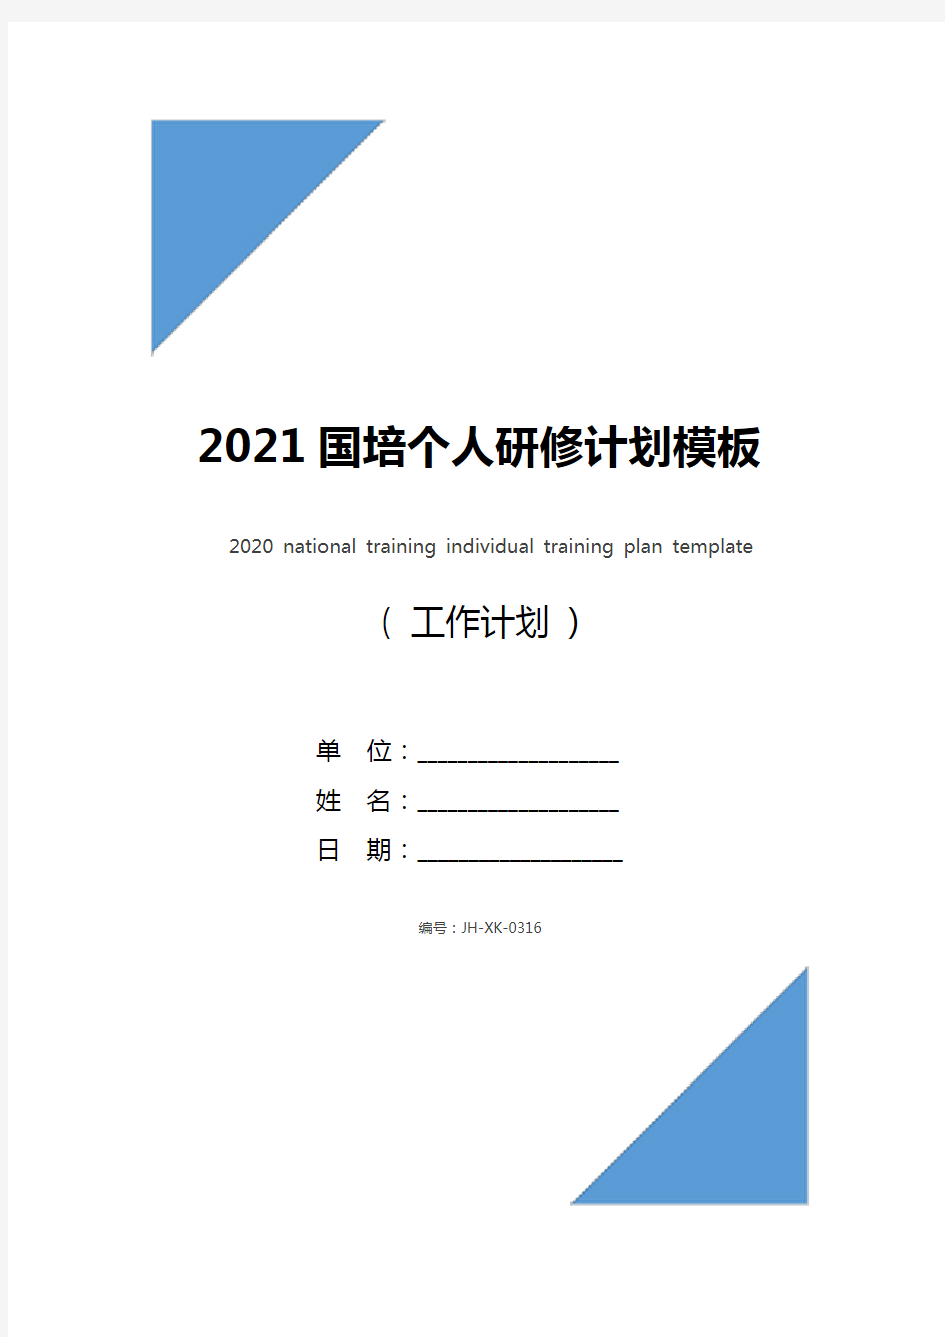 2021国培个人研修计划模板(通用版)